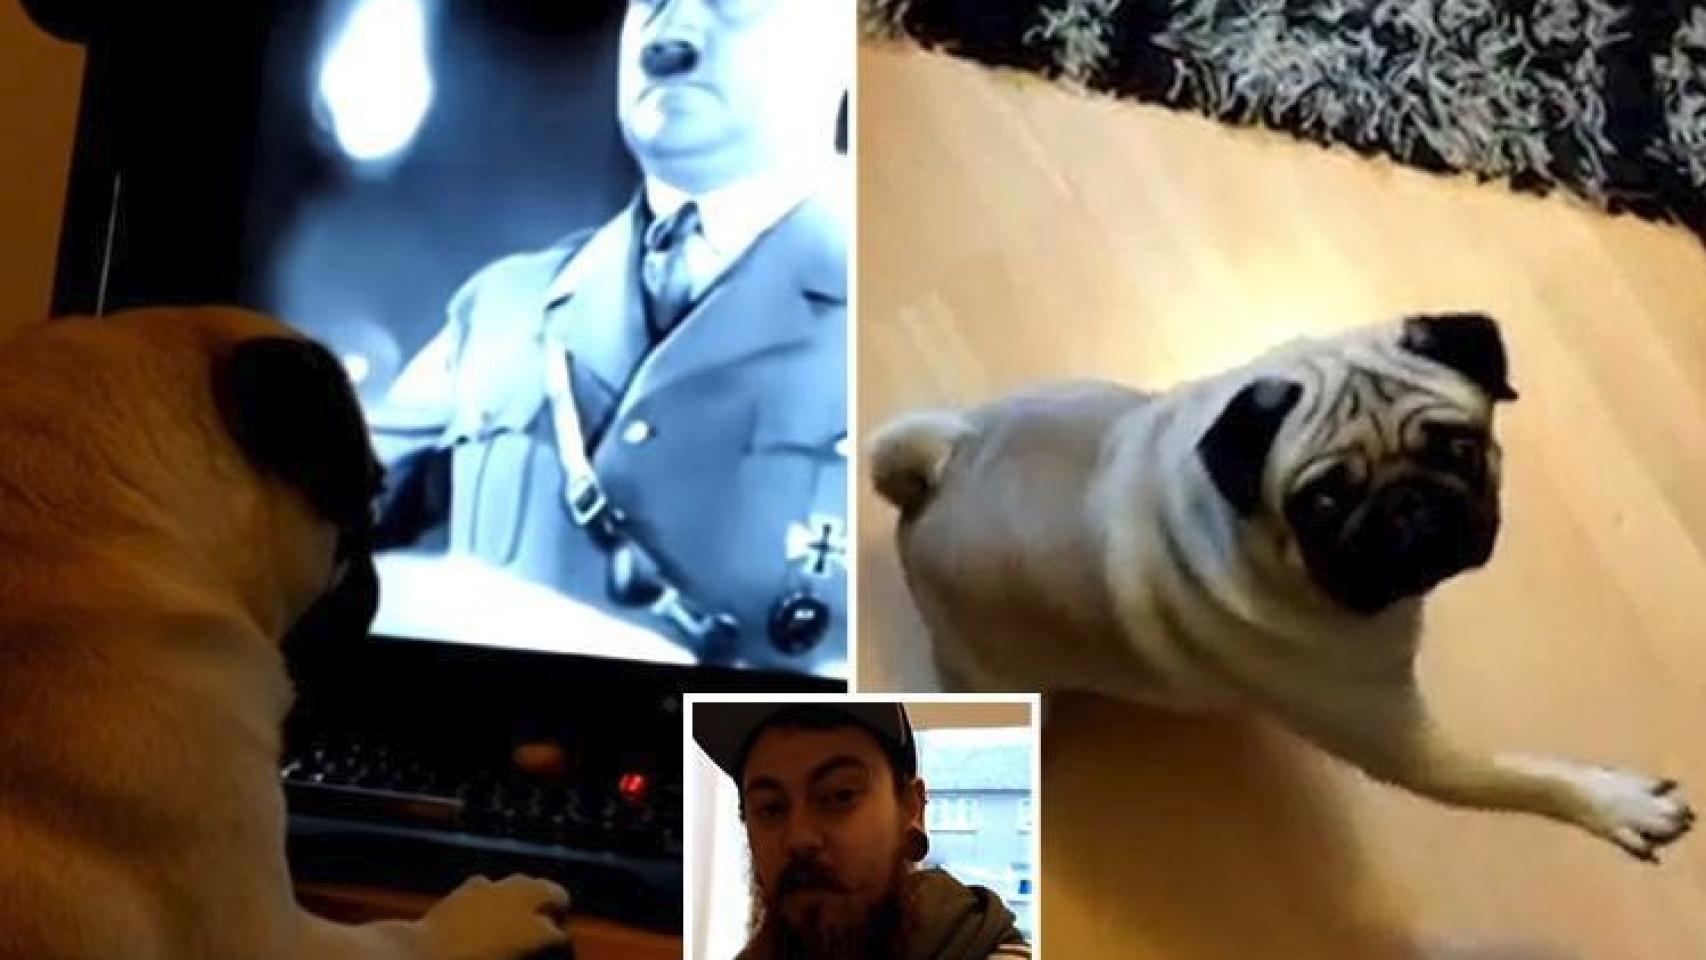 El hombre enseñaba al perro vídeos de Hitler.